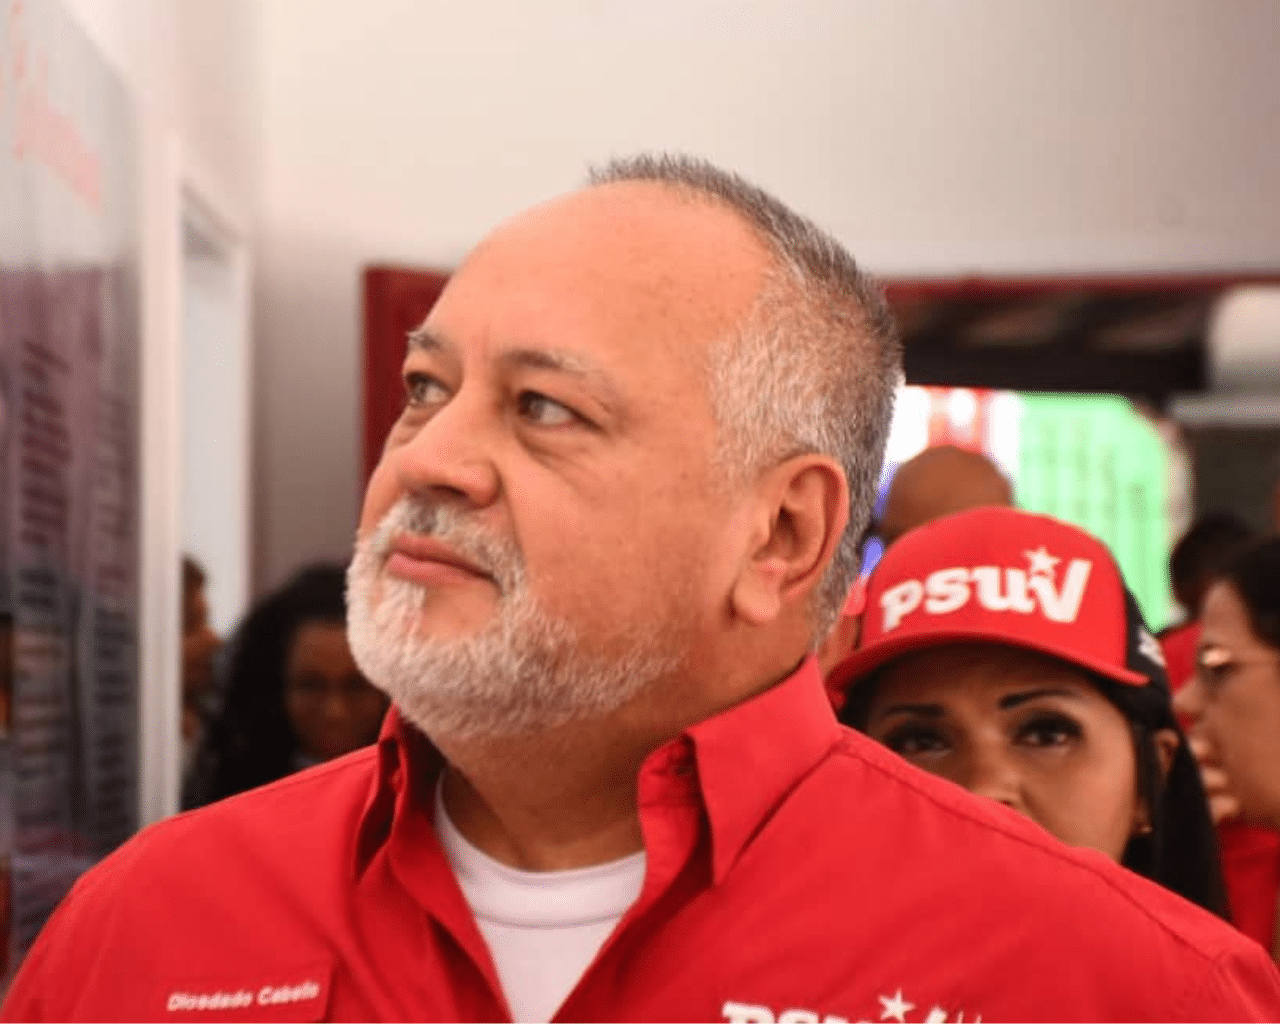 Vicepresidente del gobernante Partido Socialista Unido de Venezuela (PSUV)